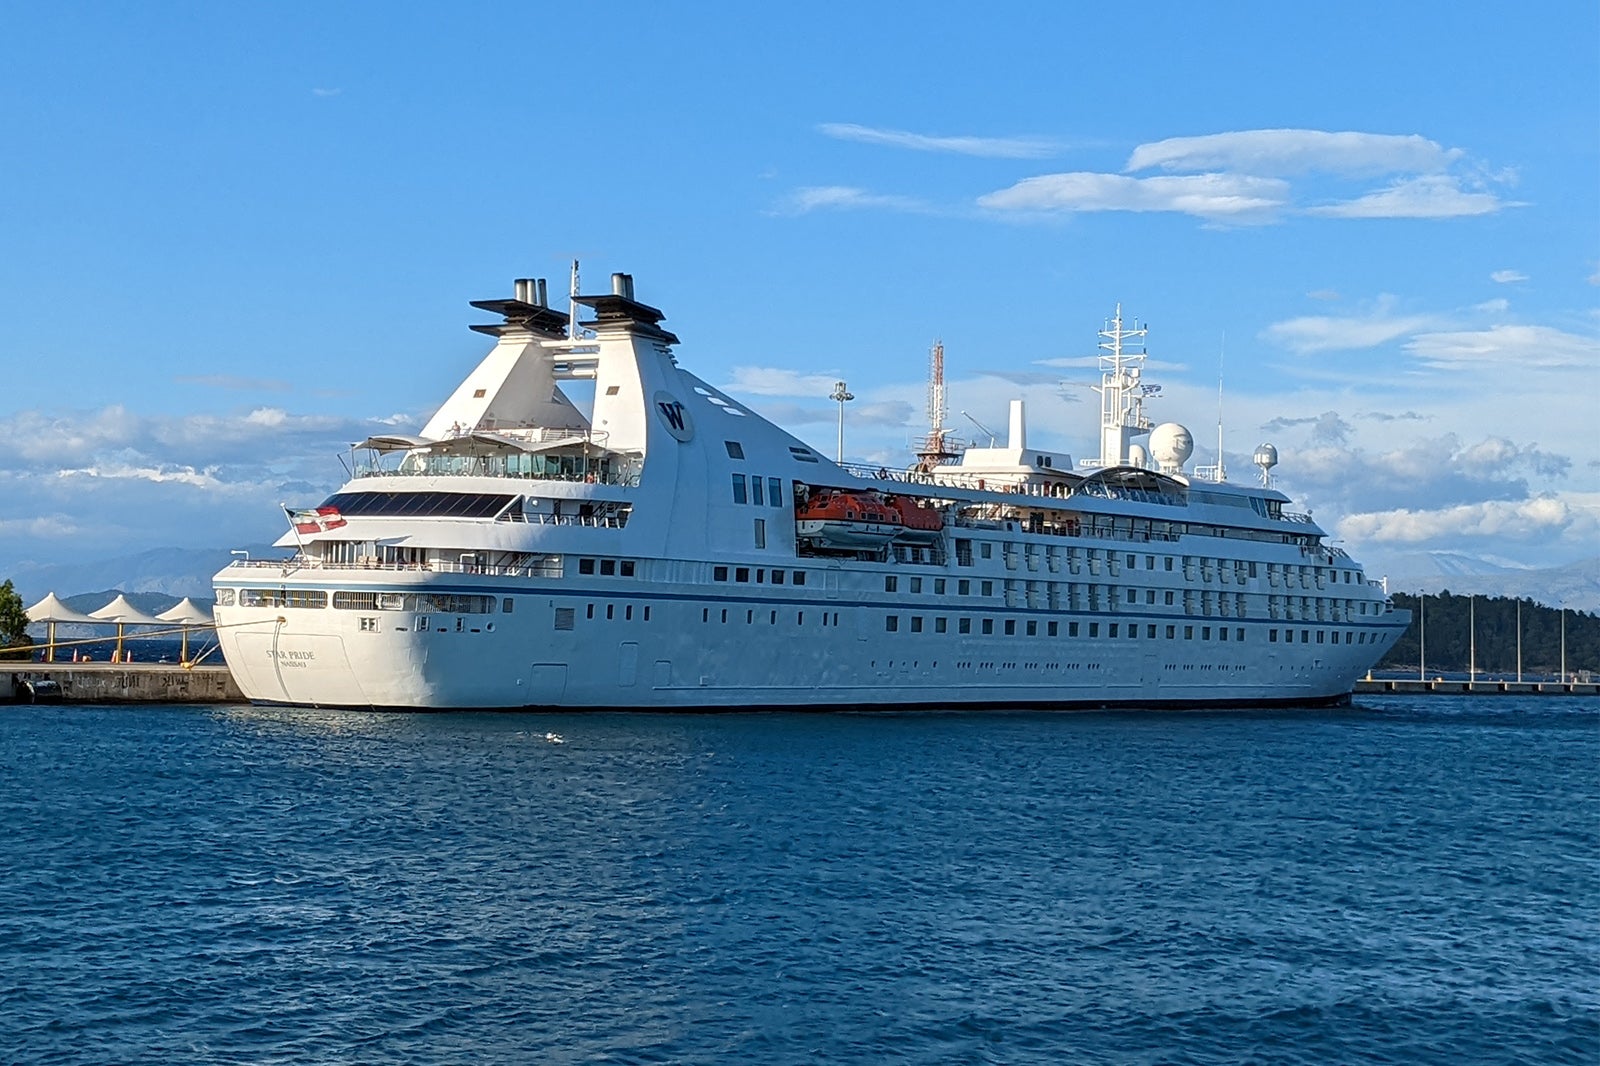 Windstar's Star Pride cruise ship docked in Corfu